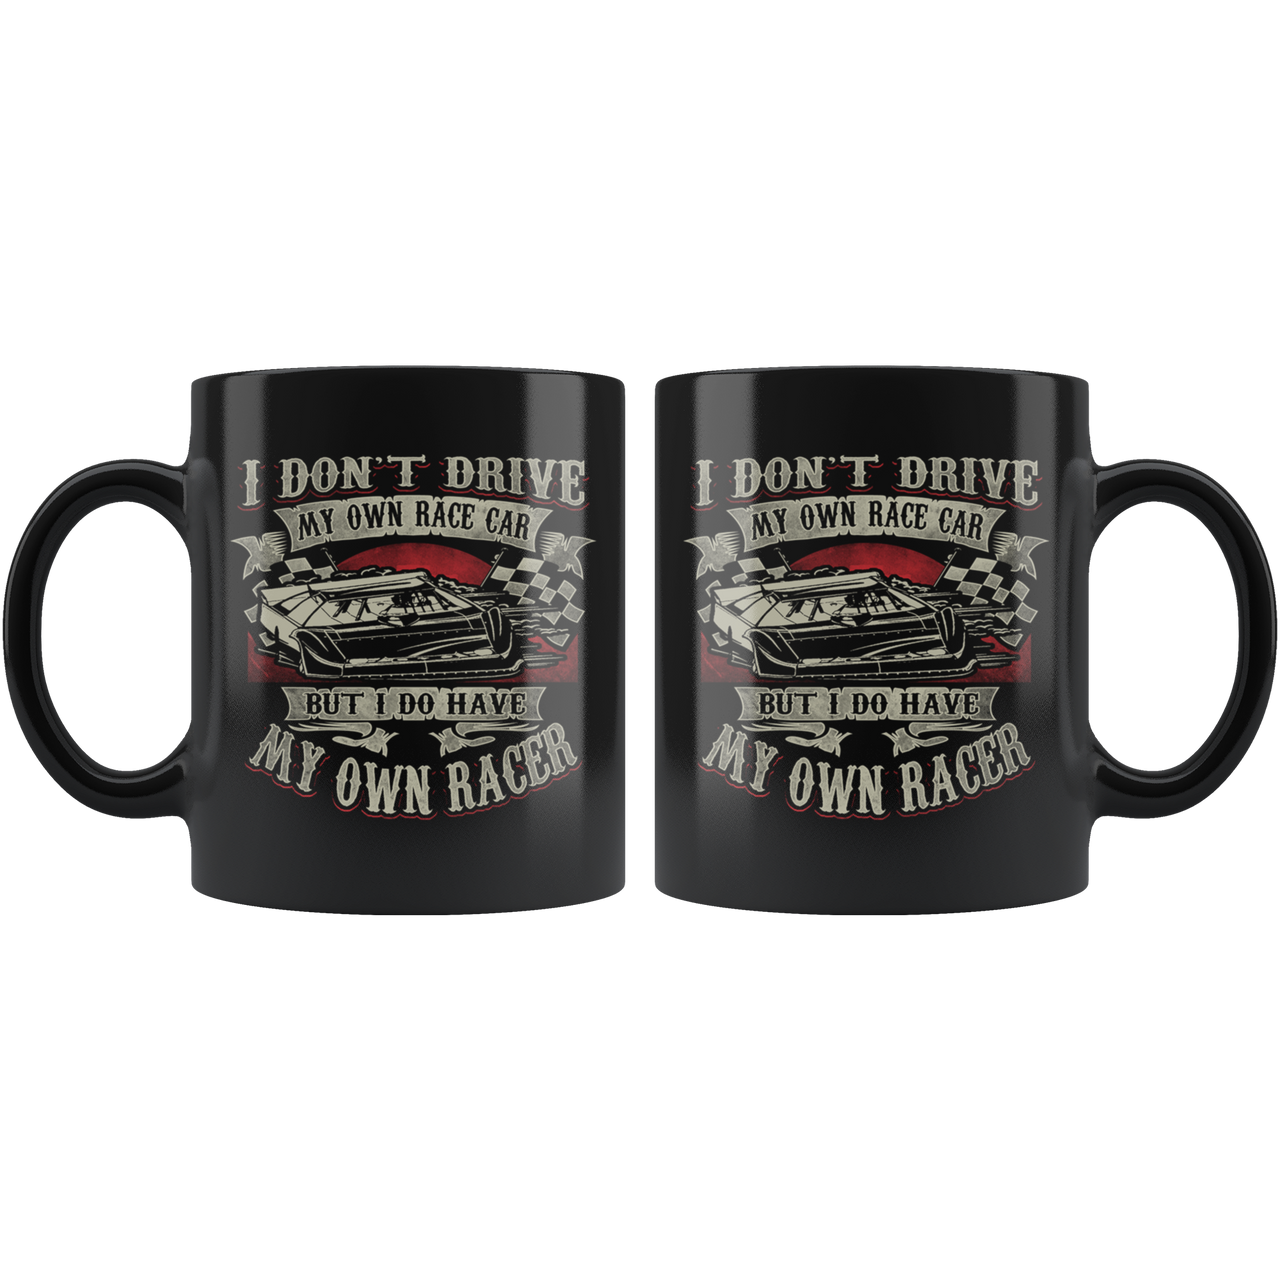 I Don't Drive My Own Race Car But I Do Have My Own Racer Mug!